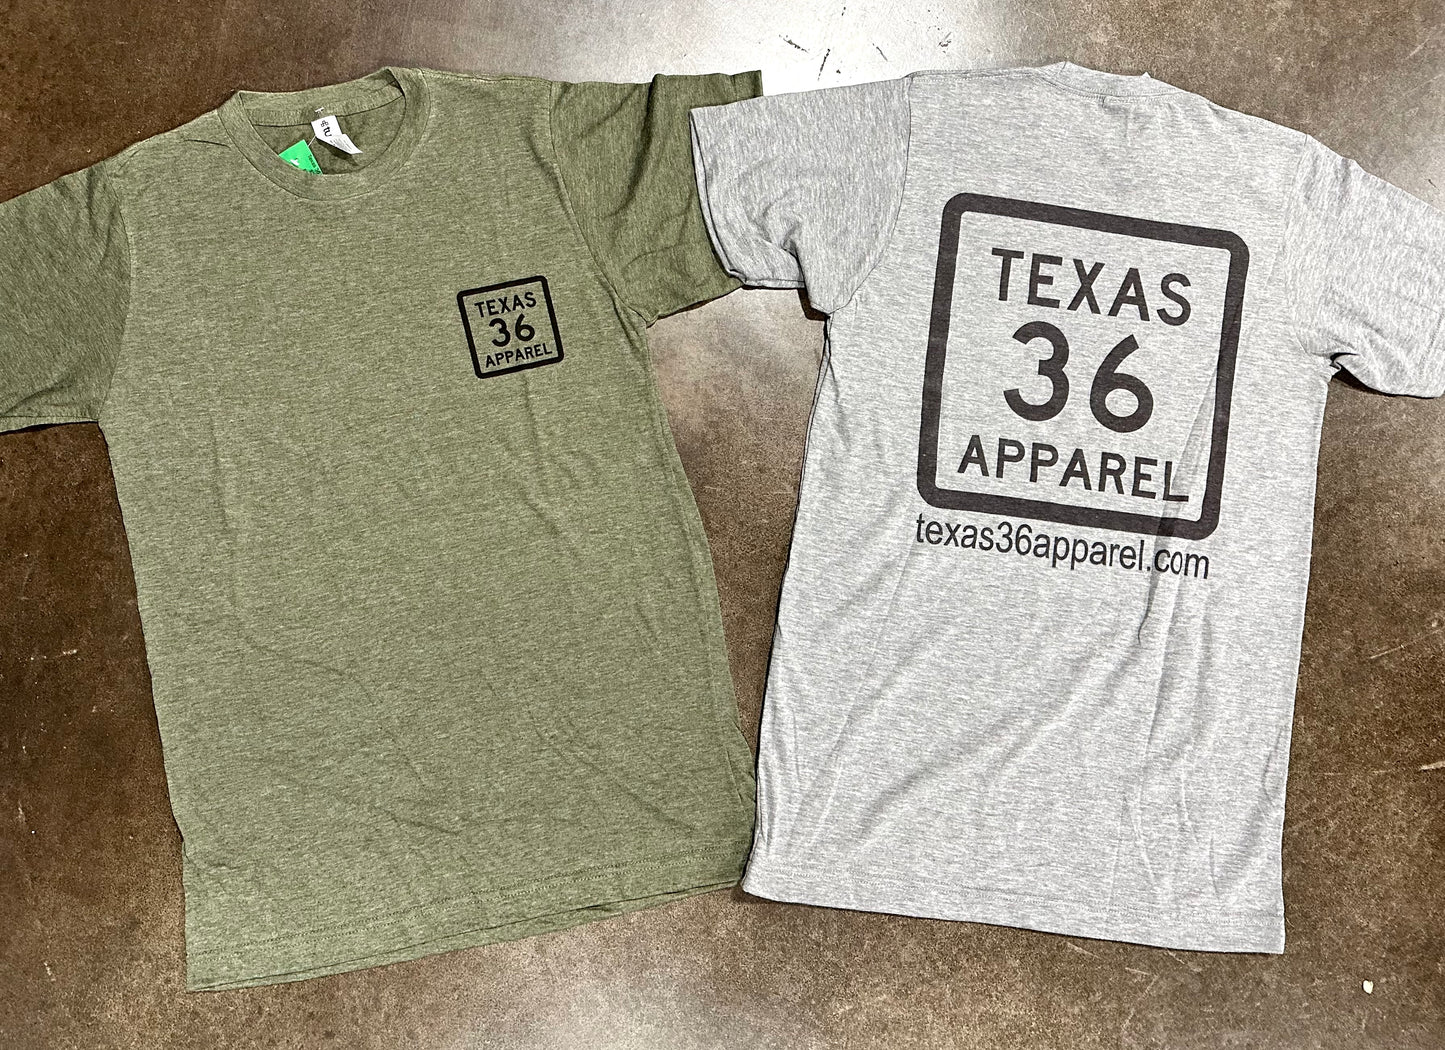 Texas 36 Apparel TShirt